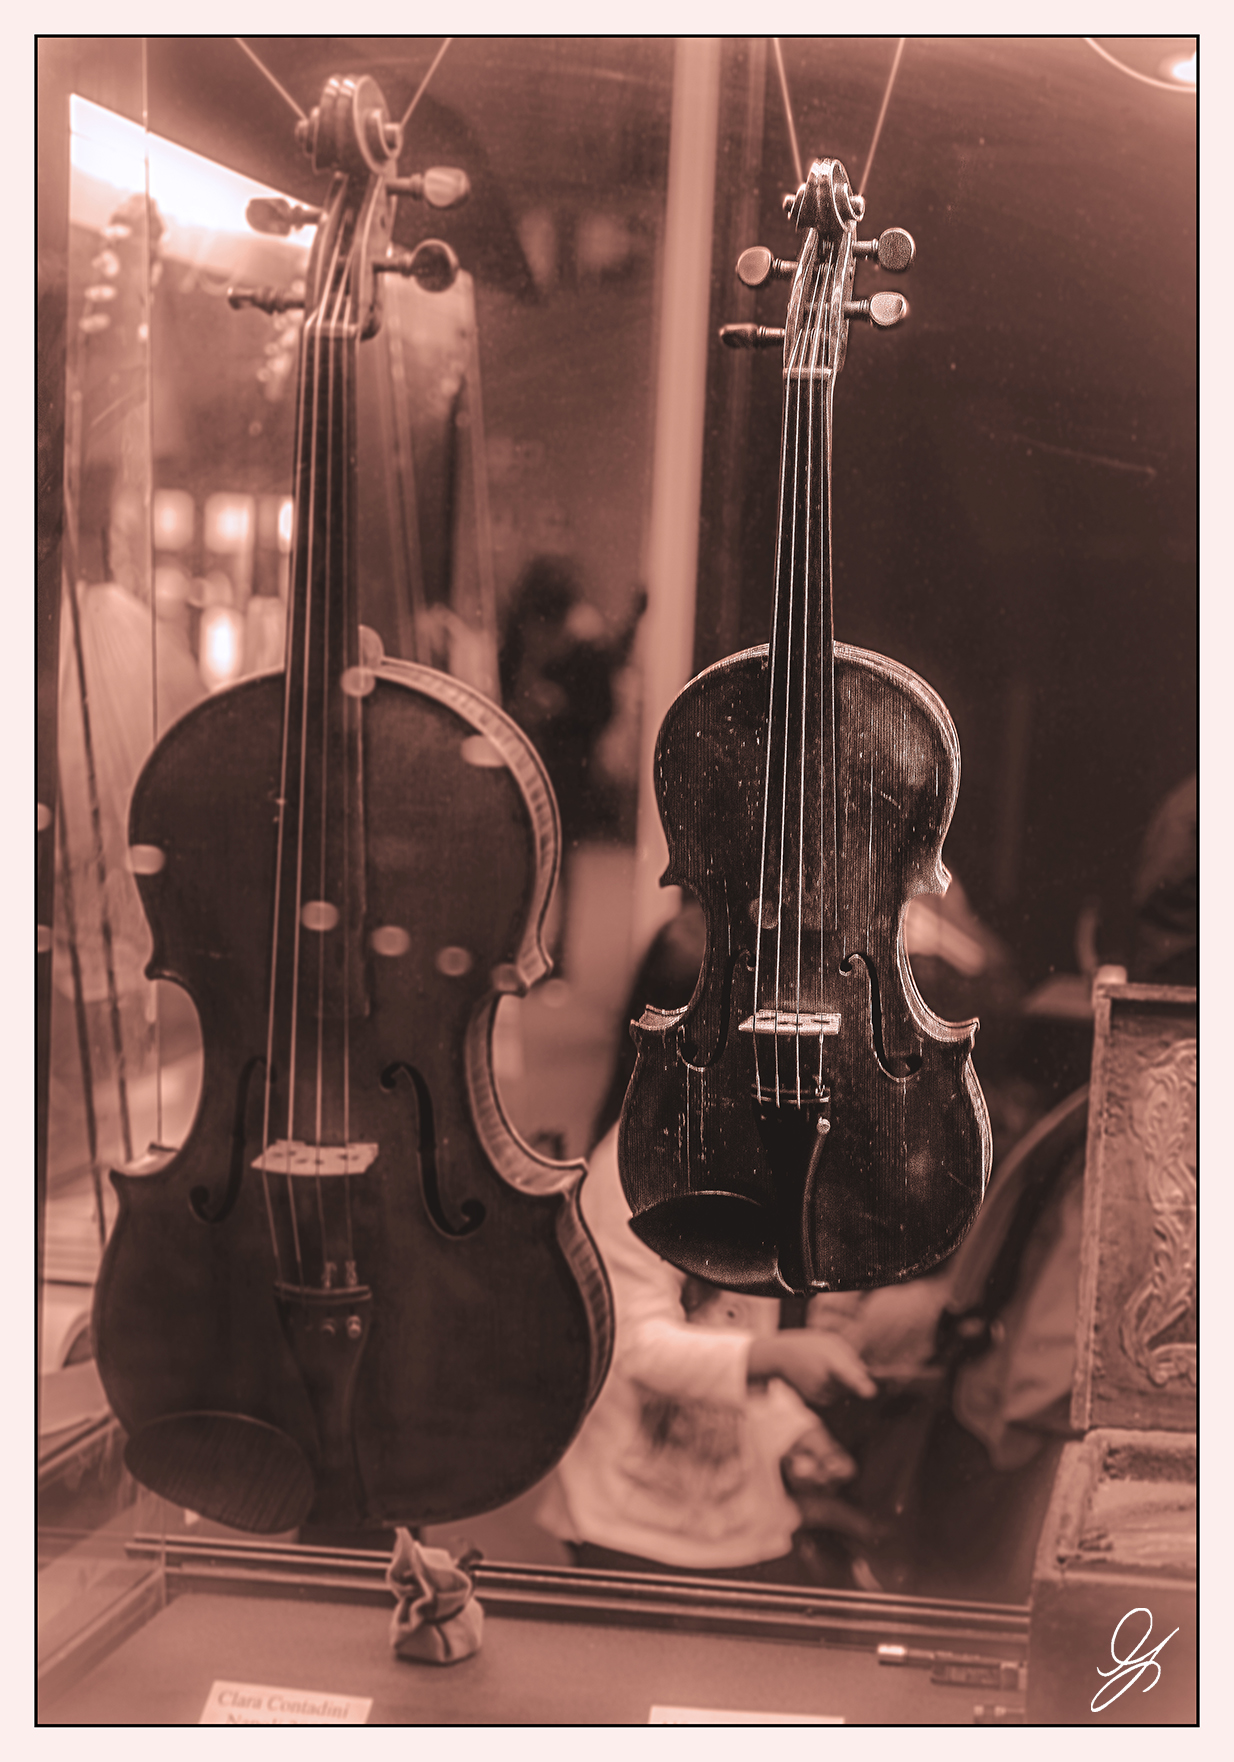 Neapolitan violin making...